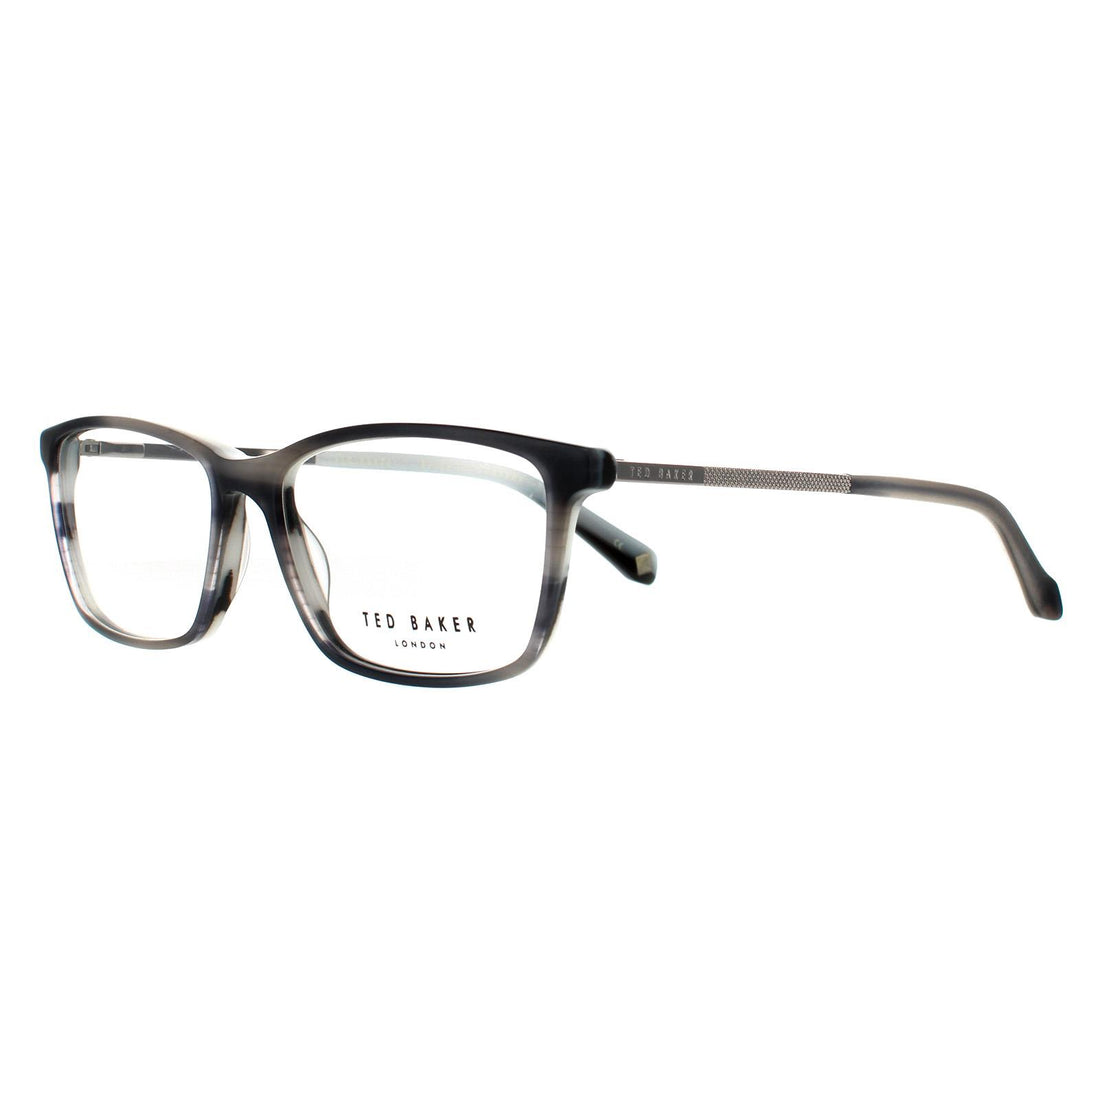 Ted Baker Evan TB8189 Glasses Frames